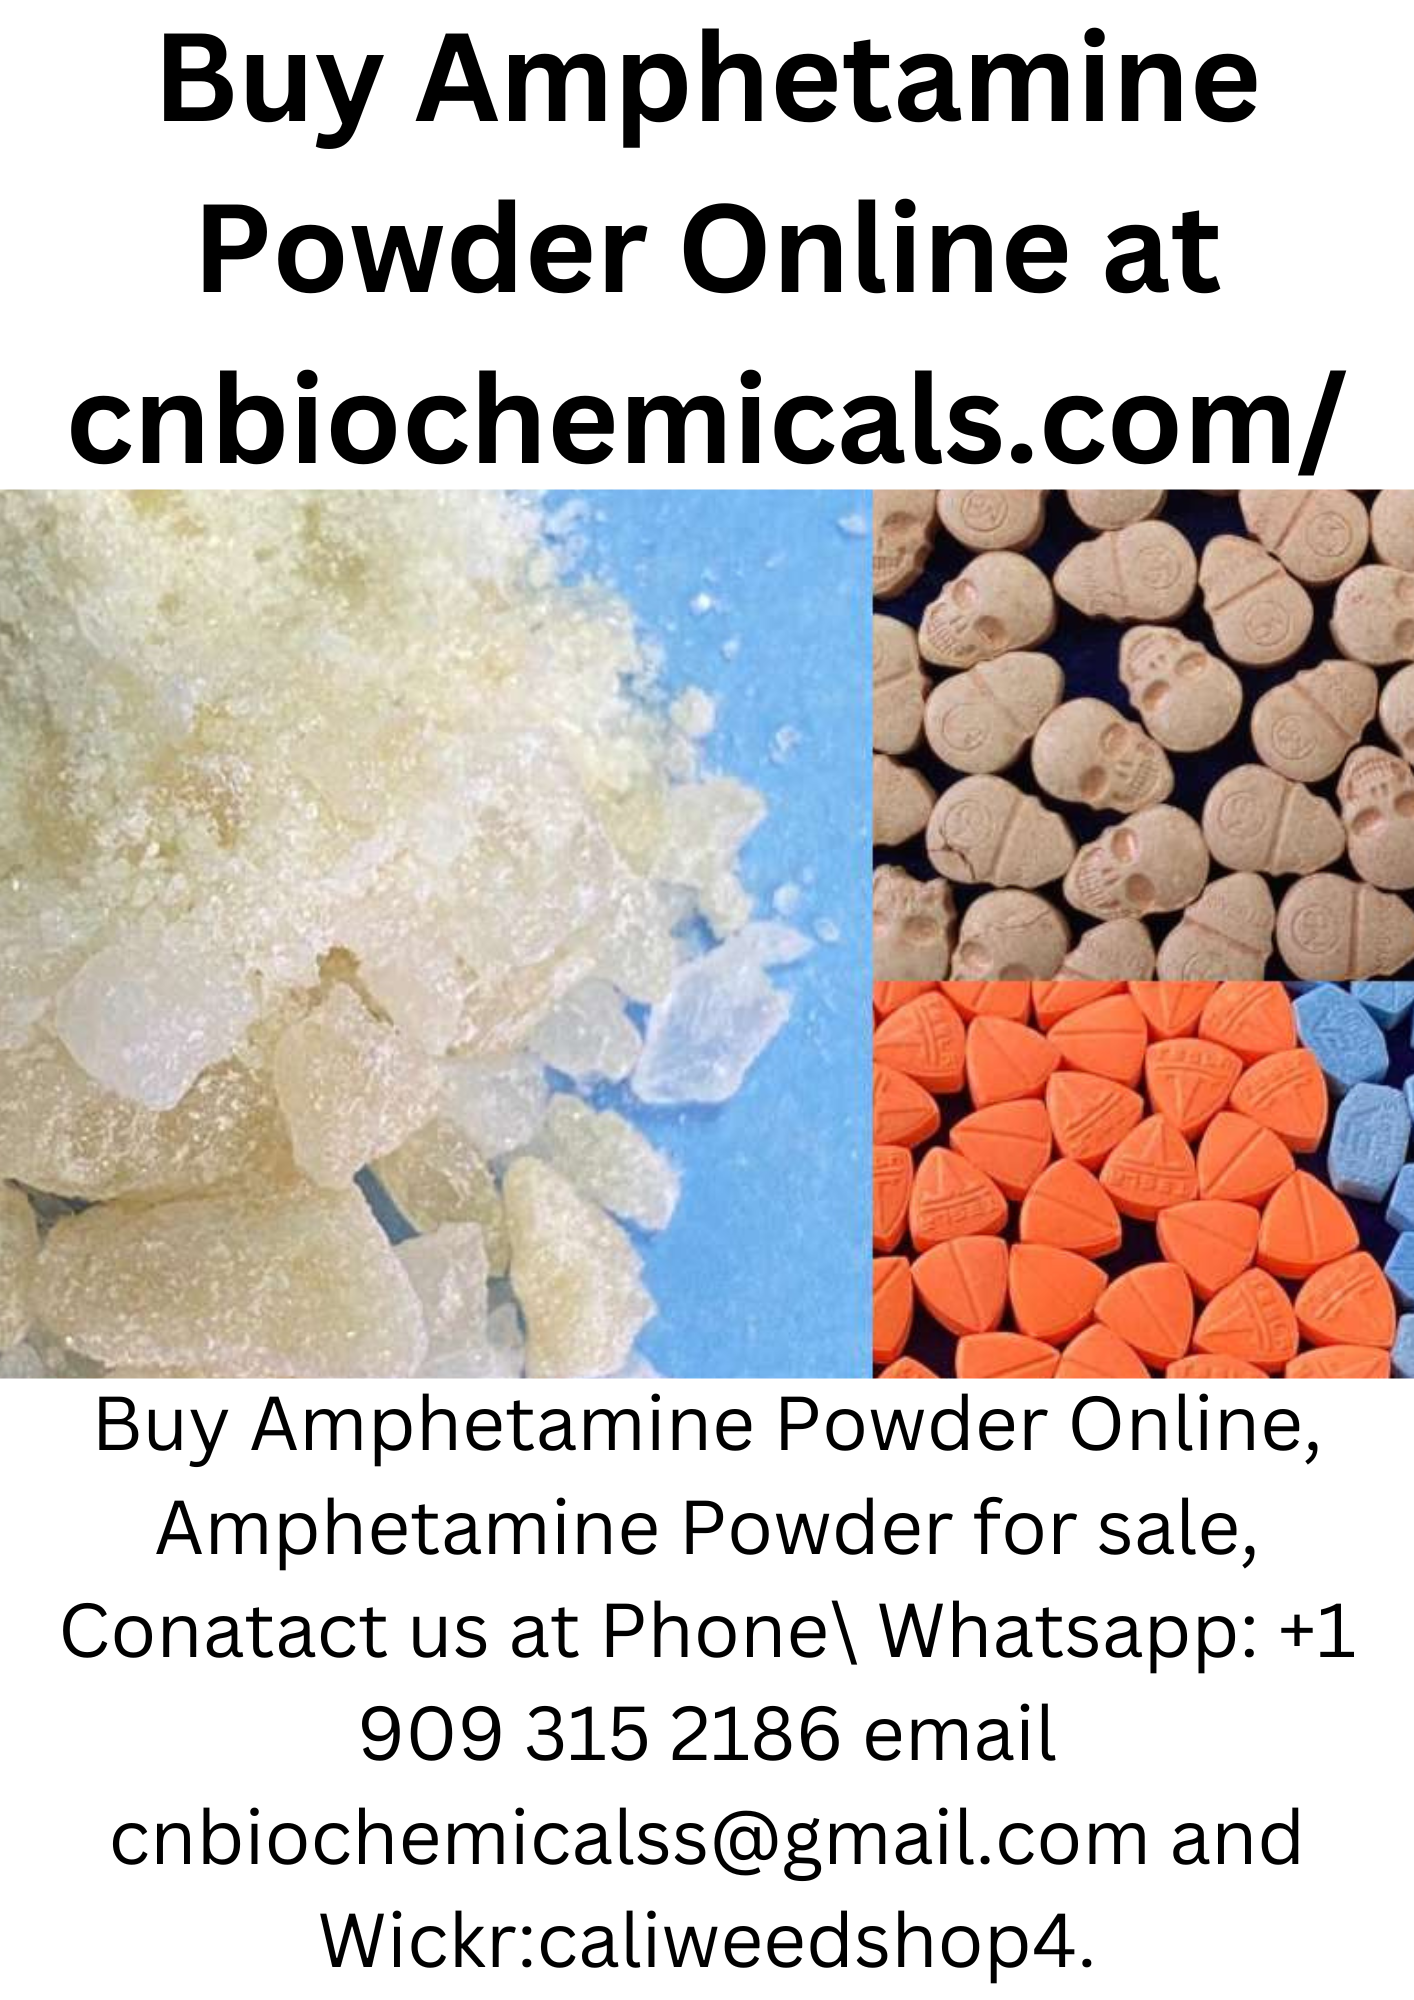 Phone\Whatsapp: +1 909 315 2186 - Buy Pure Crystals Meth Online - Crystal Meth For Sale Online